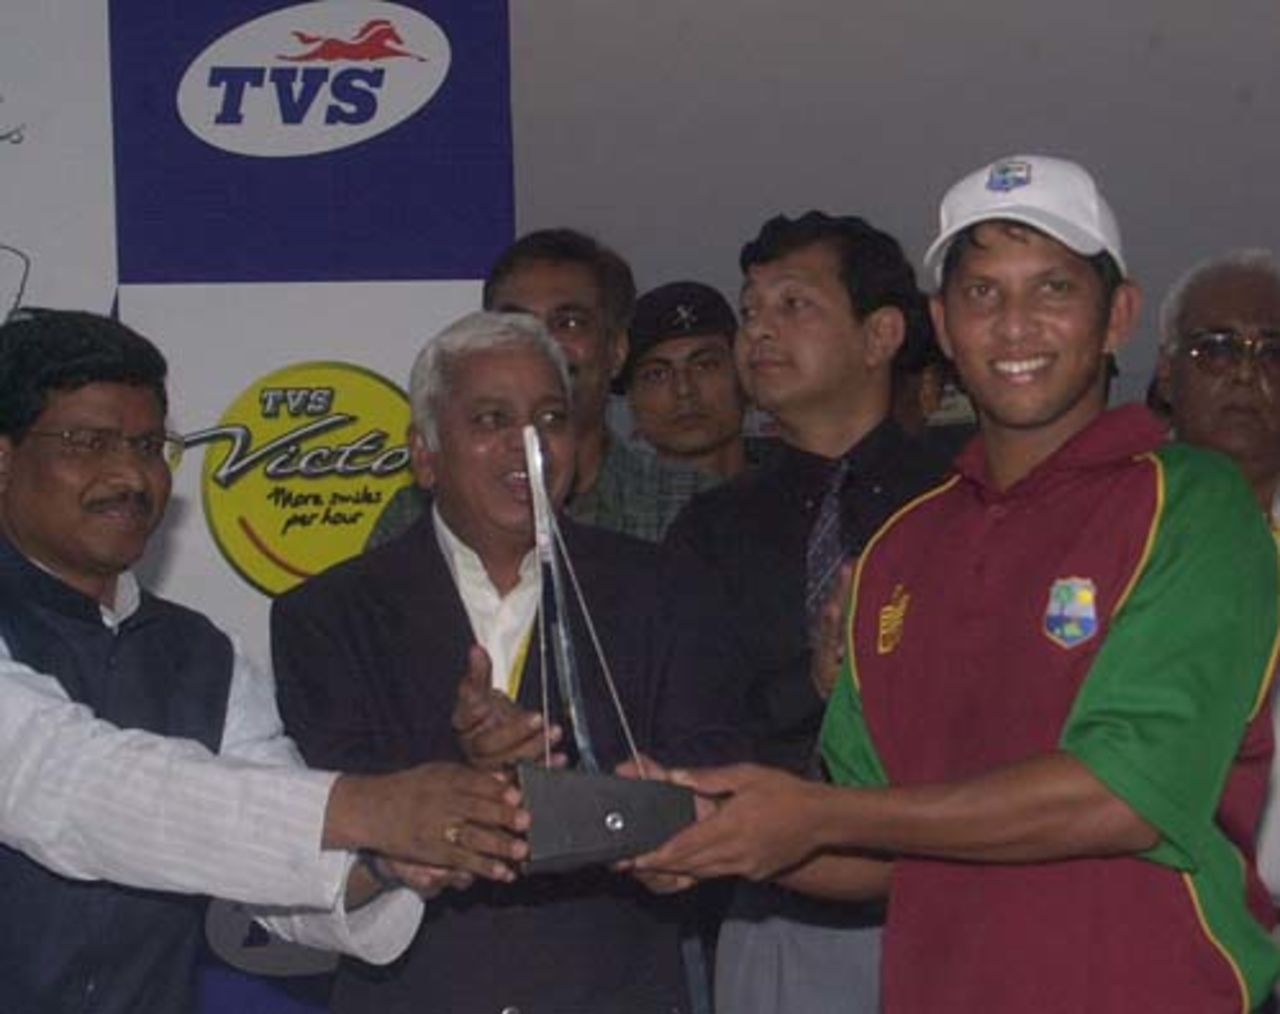 1st ODI: India v West Indies at Jamshedpur, 6 Nov 2002